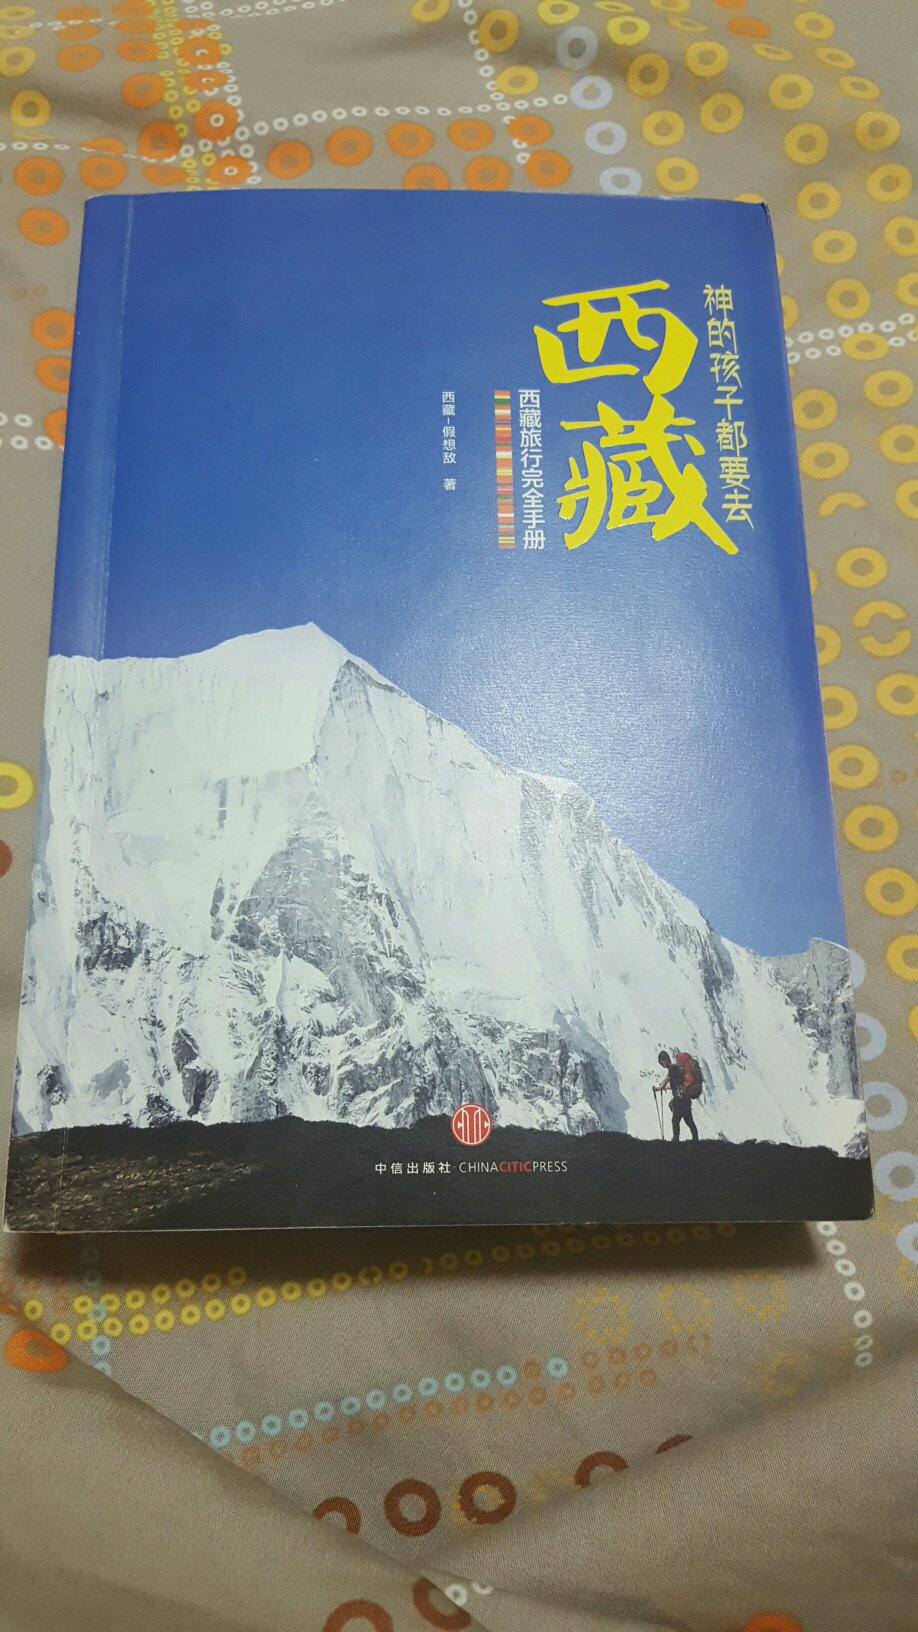 内容不错，写的比较详细，介绍了很多西藏人文地理知识和路书，先多看几遍，等有时间去西藏就用上了。